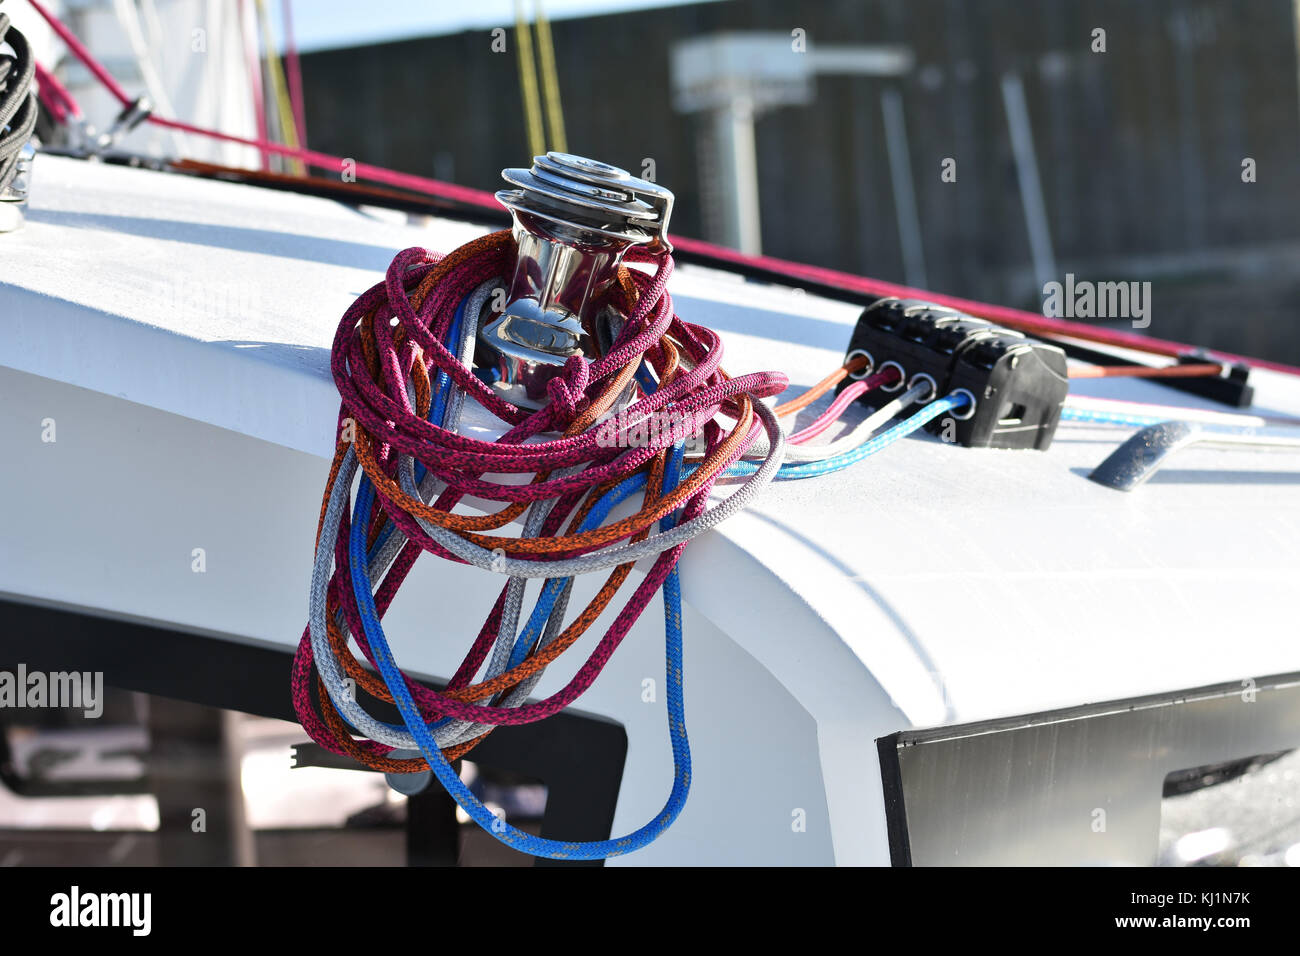 Détails de treuils et de cordes sur bateau à voile, bateau racer. concept vue horizontale. Banque D'Images